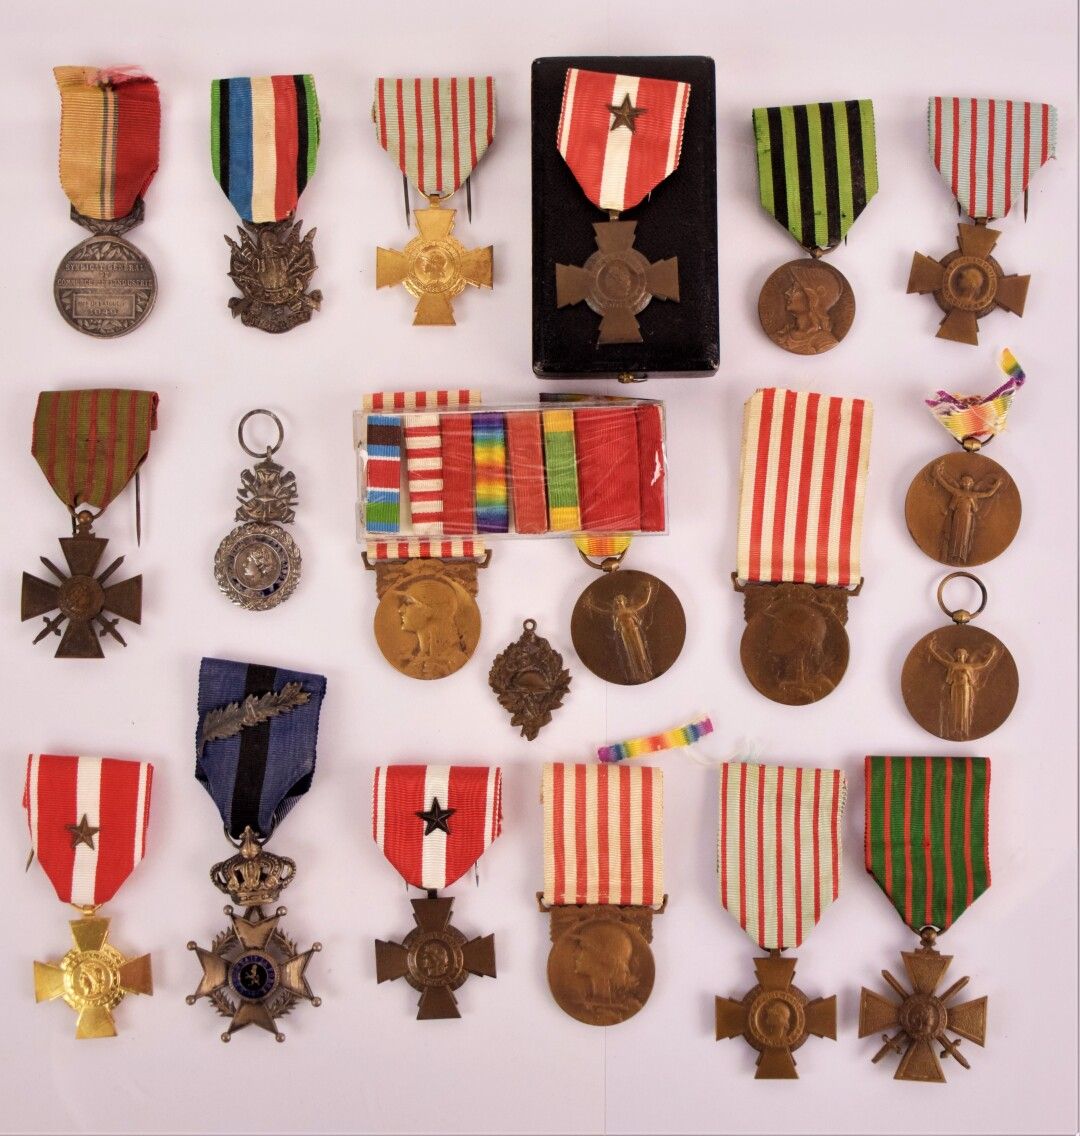 Null [MILITAR]

Colección de unas 19 medallas que incluyen: 

- Medalla conmemor&hellip;